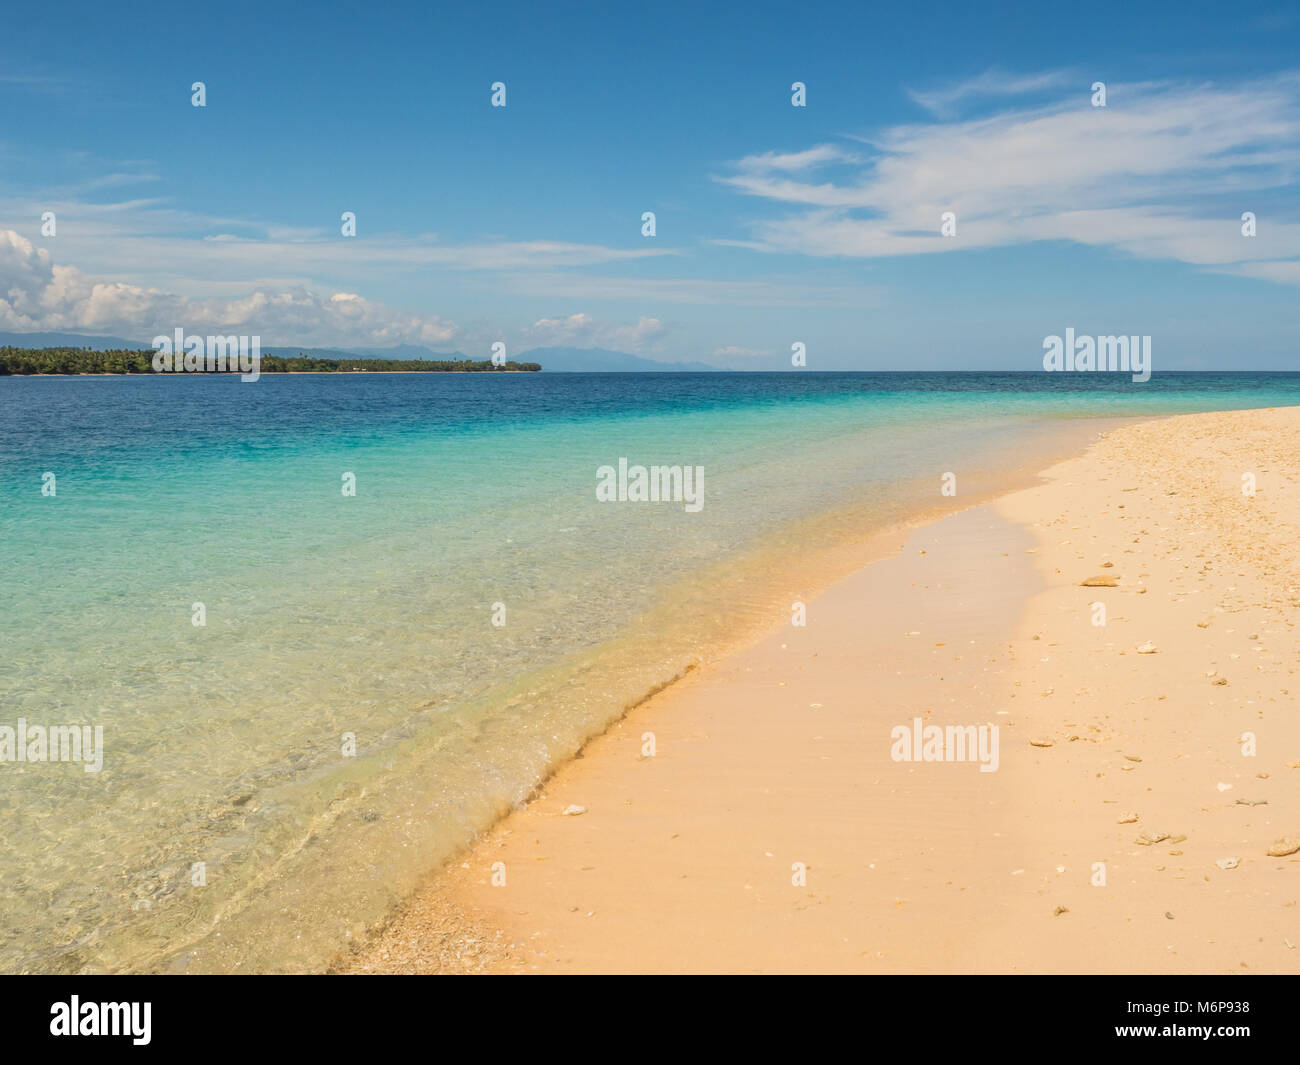 Schönen tropischen Strand auf einer der Sieben Inseln, in der Nähe der Insel Seram, Molukken, Indonesien, pelau Sau, Sau'u, Banda See, Asien Stockfoto